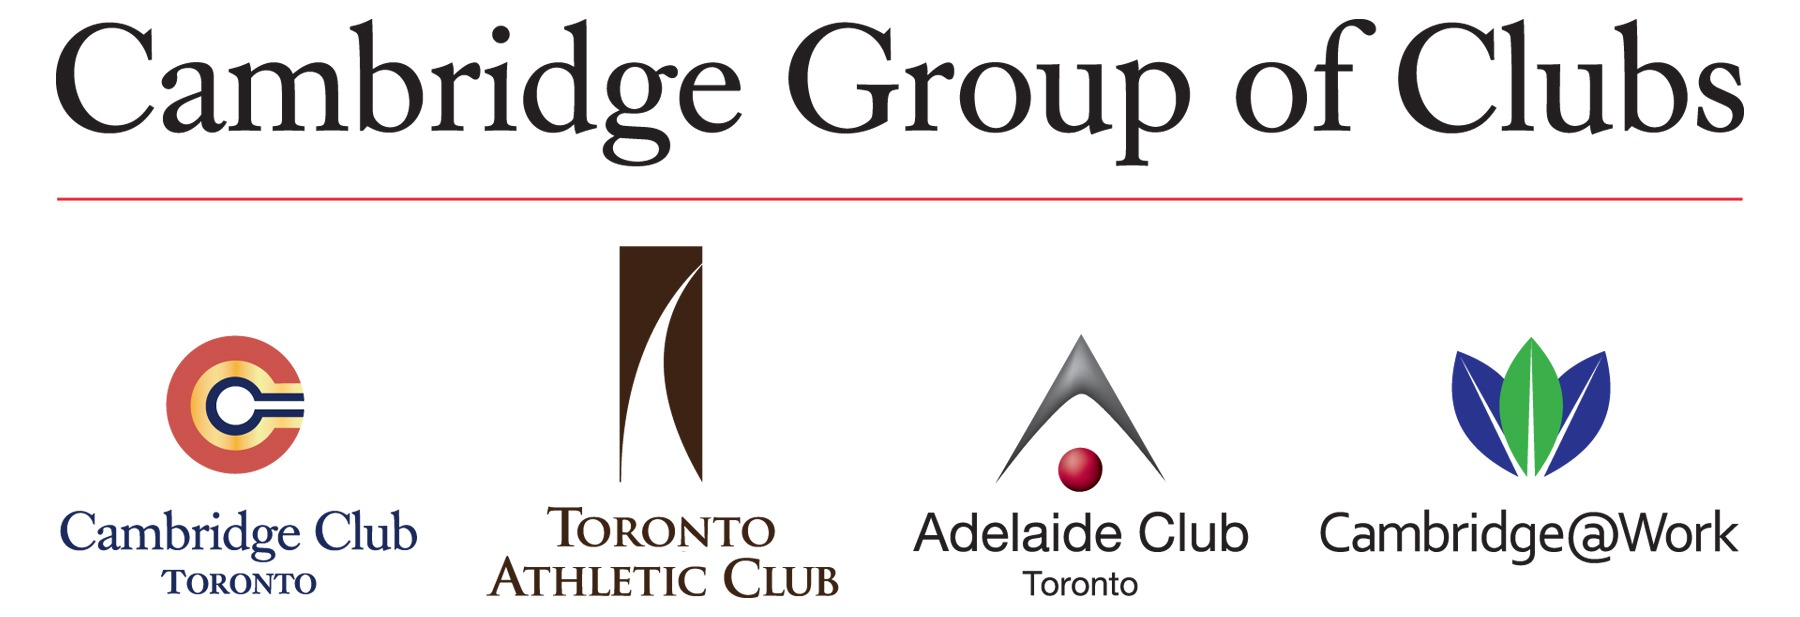 Cambridge Group of Clubs logo